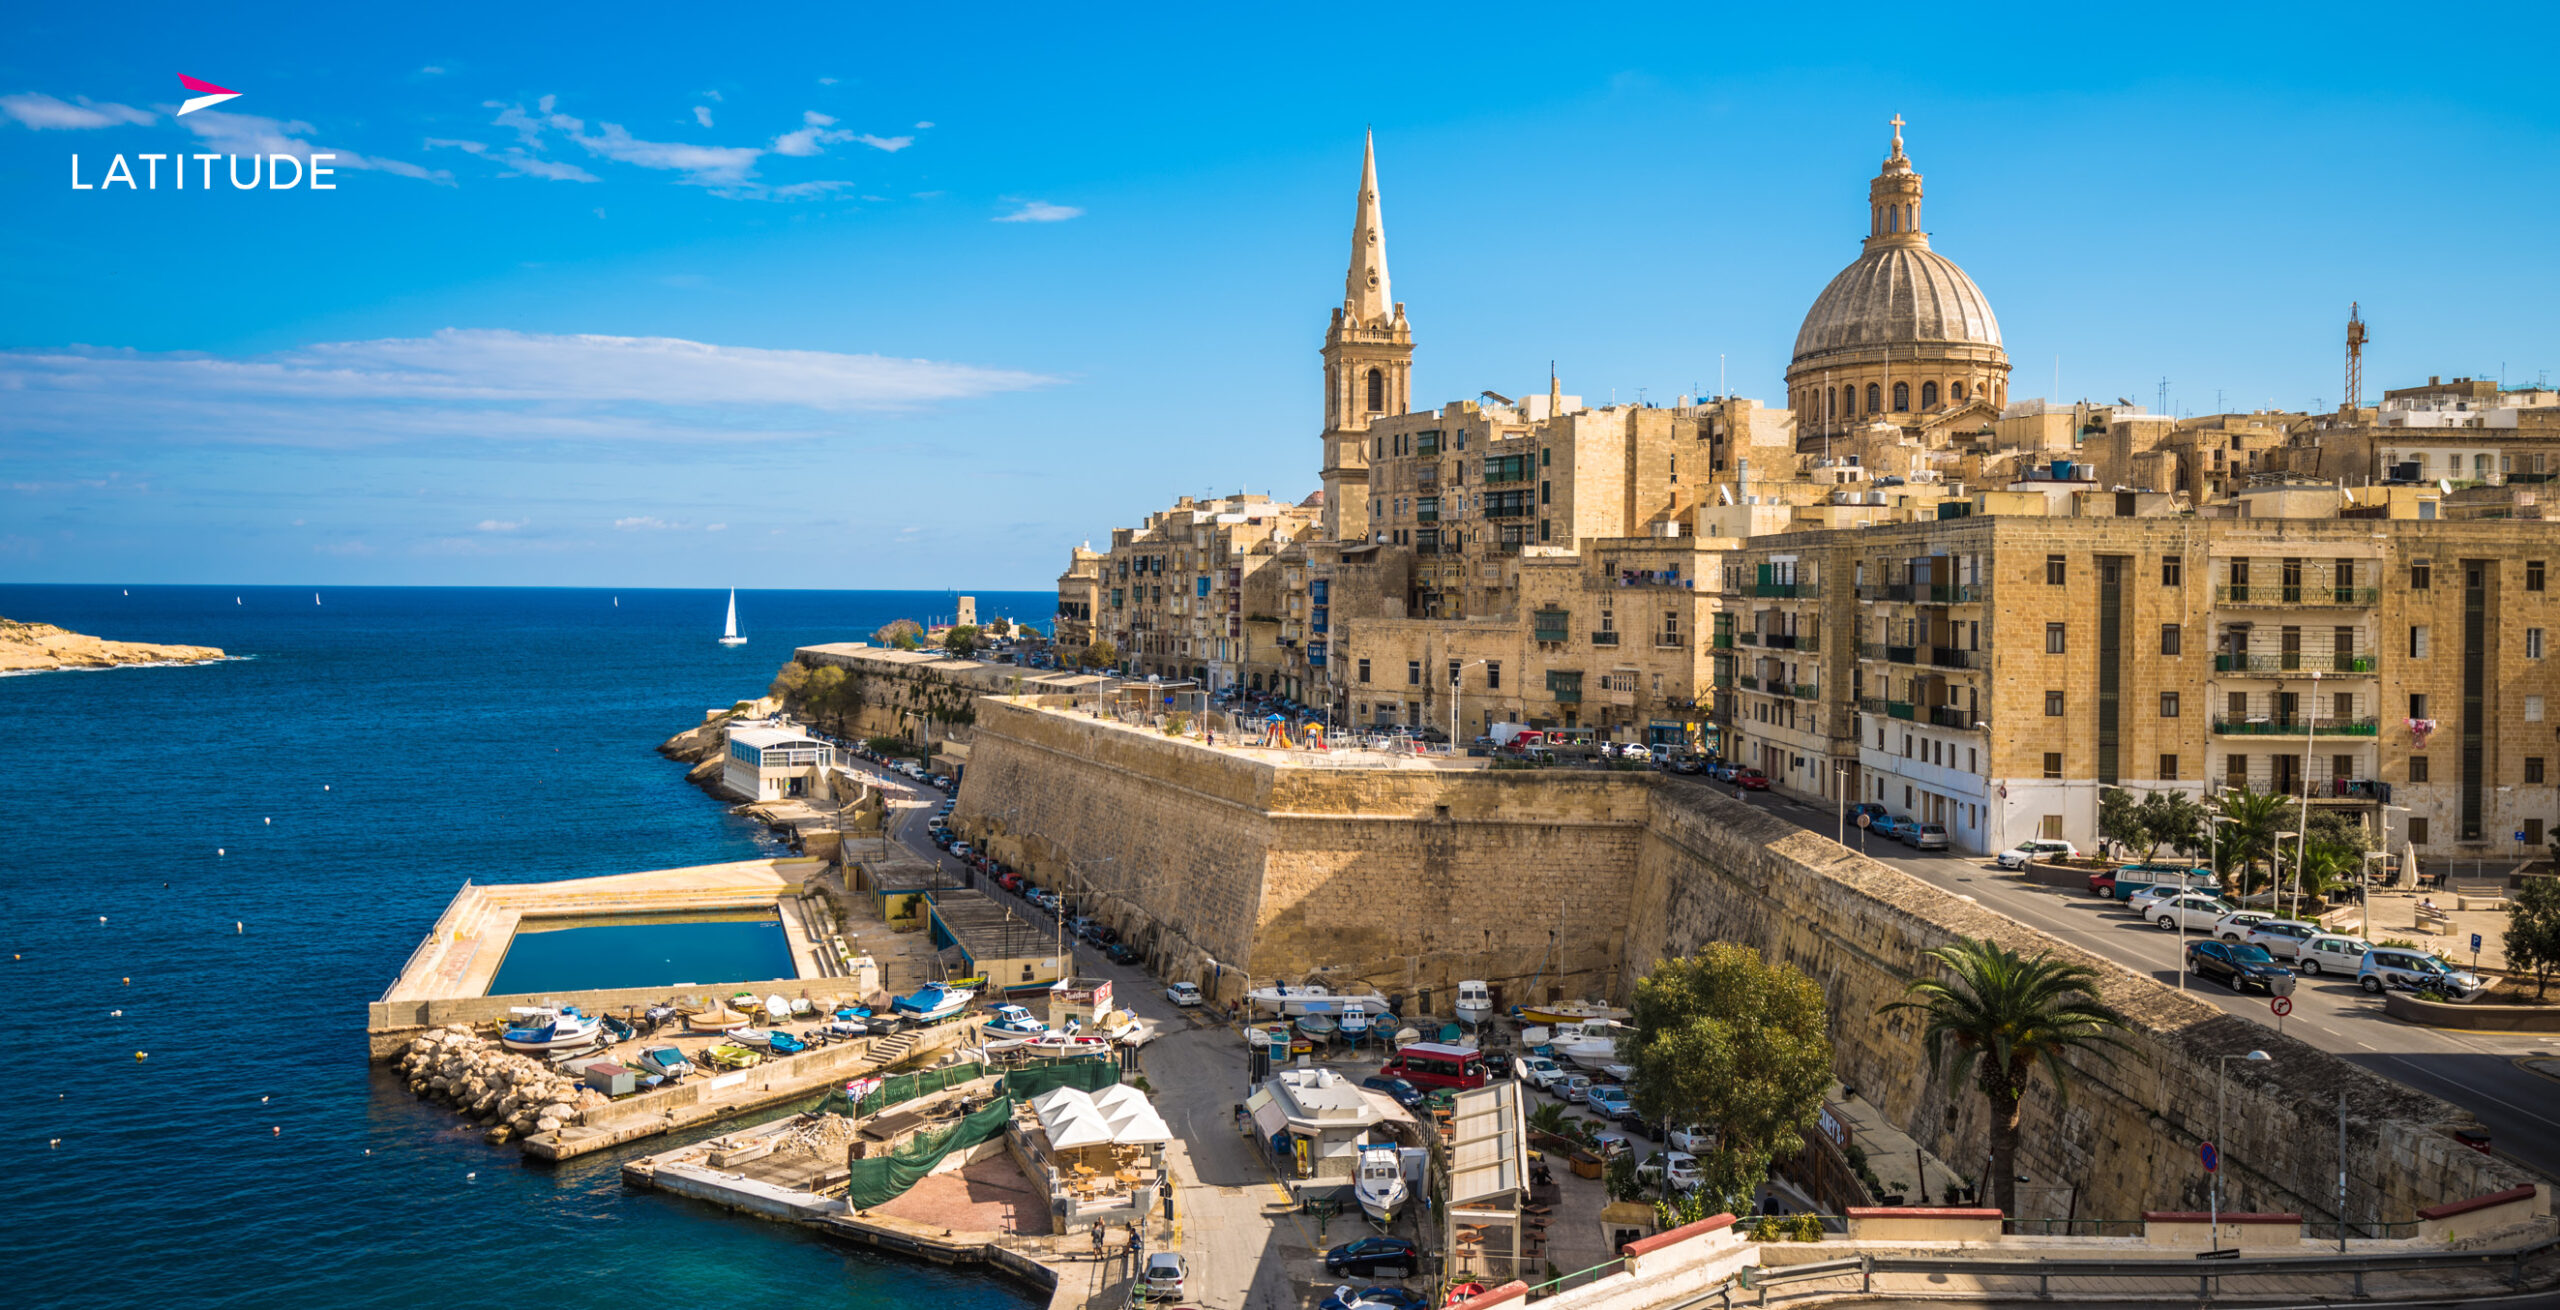 Bienvenidos a los restaurantes imprescindibles de Malta